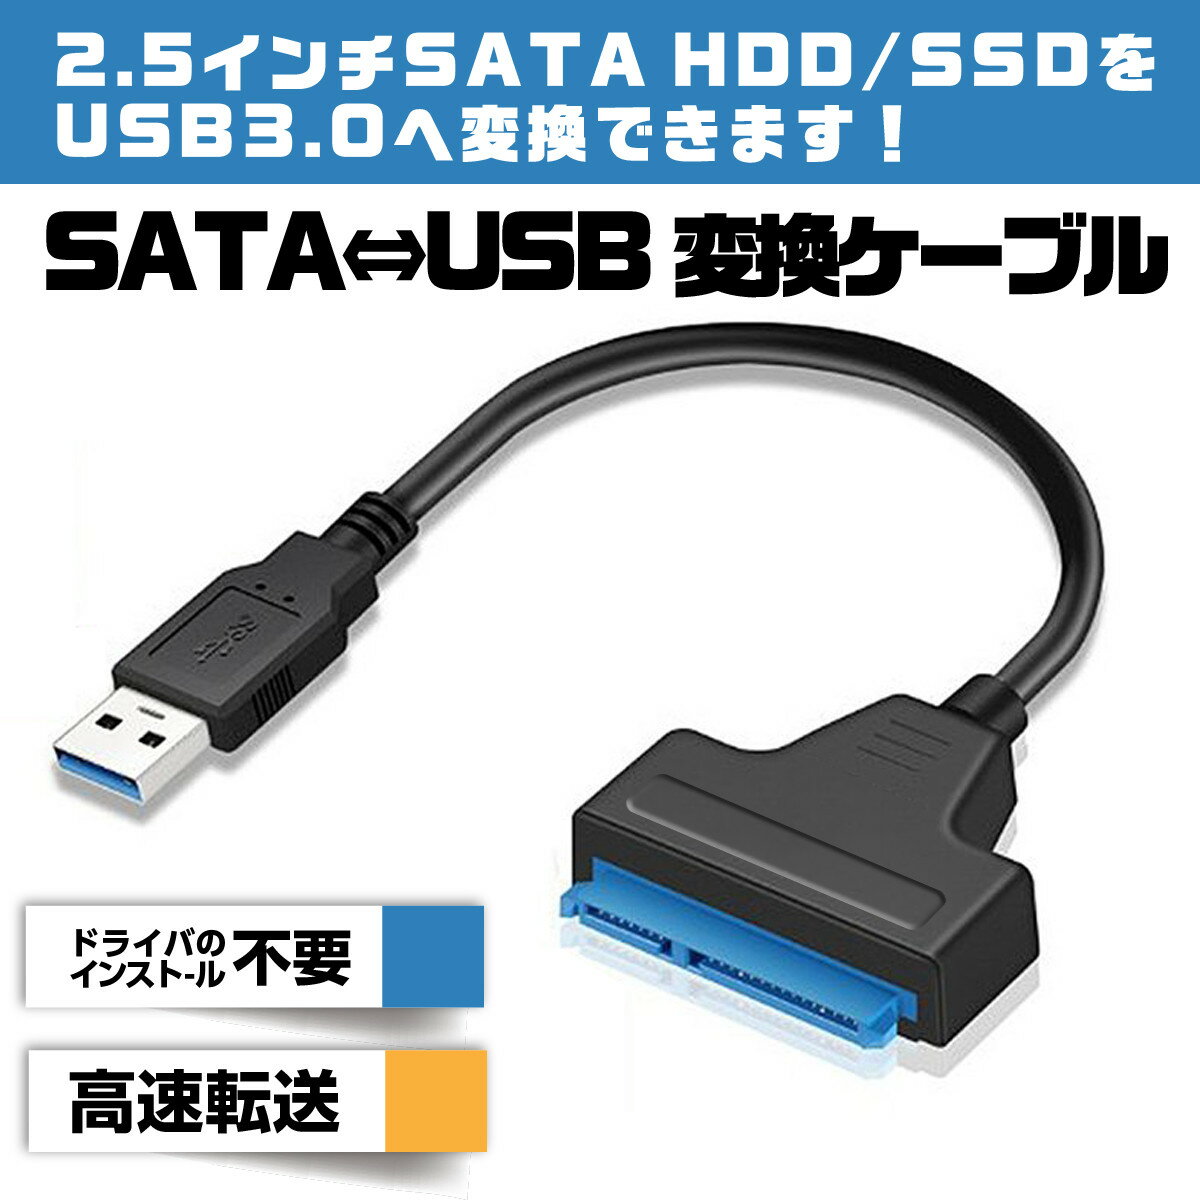 【5/16(木)1:59までポイント5倍】SATA USB 変換ケーブル SATAケーブル SATA to USB USB3.0 2.5 HDD SSD換装 ハードディスク インチ アダプター クローン